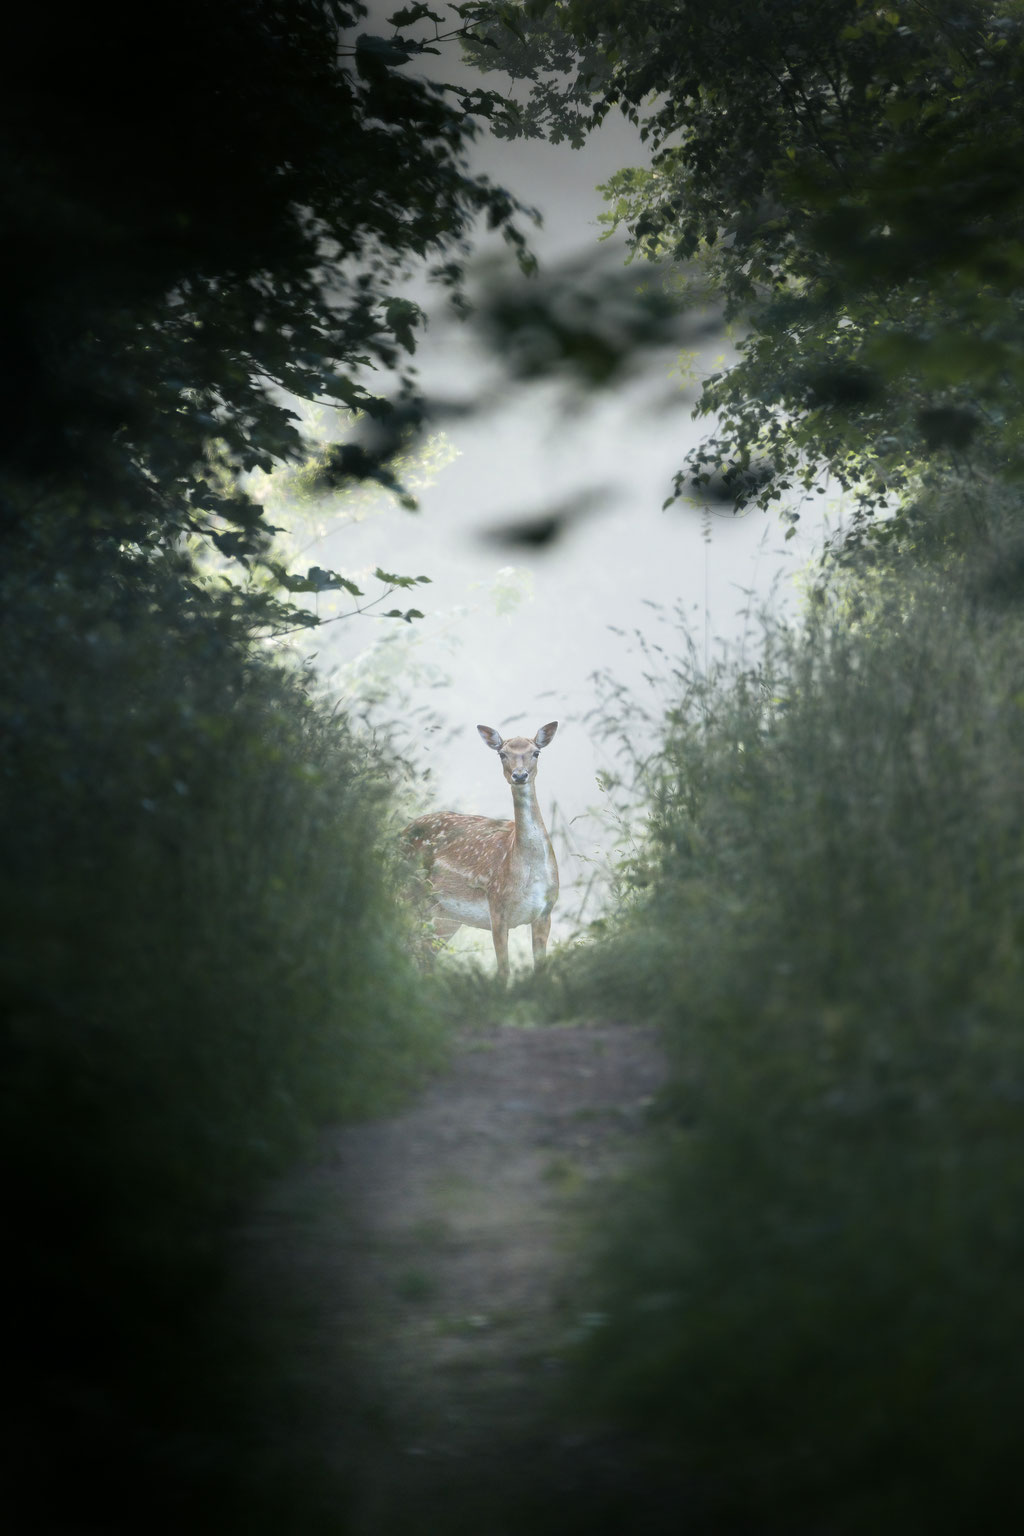 Damhirsch / European fallow deer (Dama dama) | 07-2021 | Schleswig-Holstein, Germany